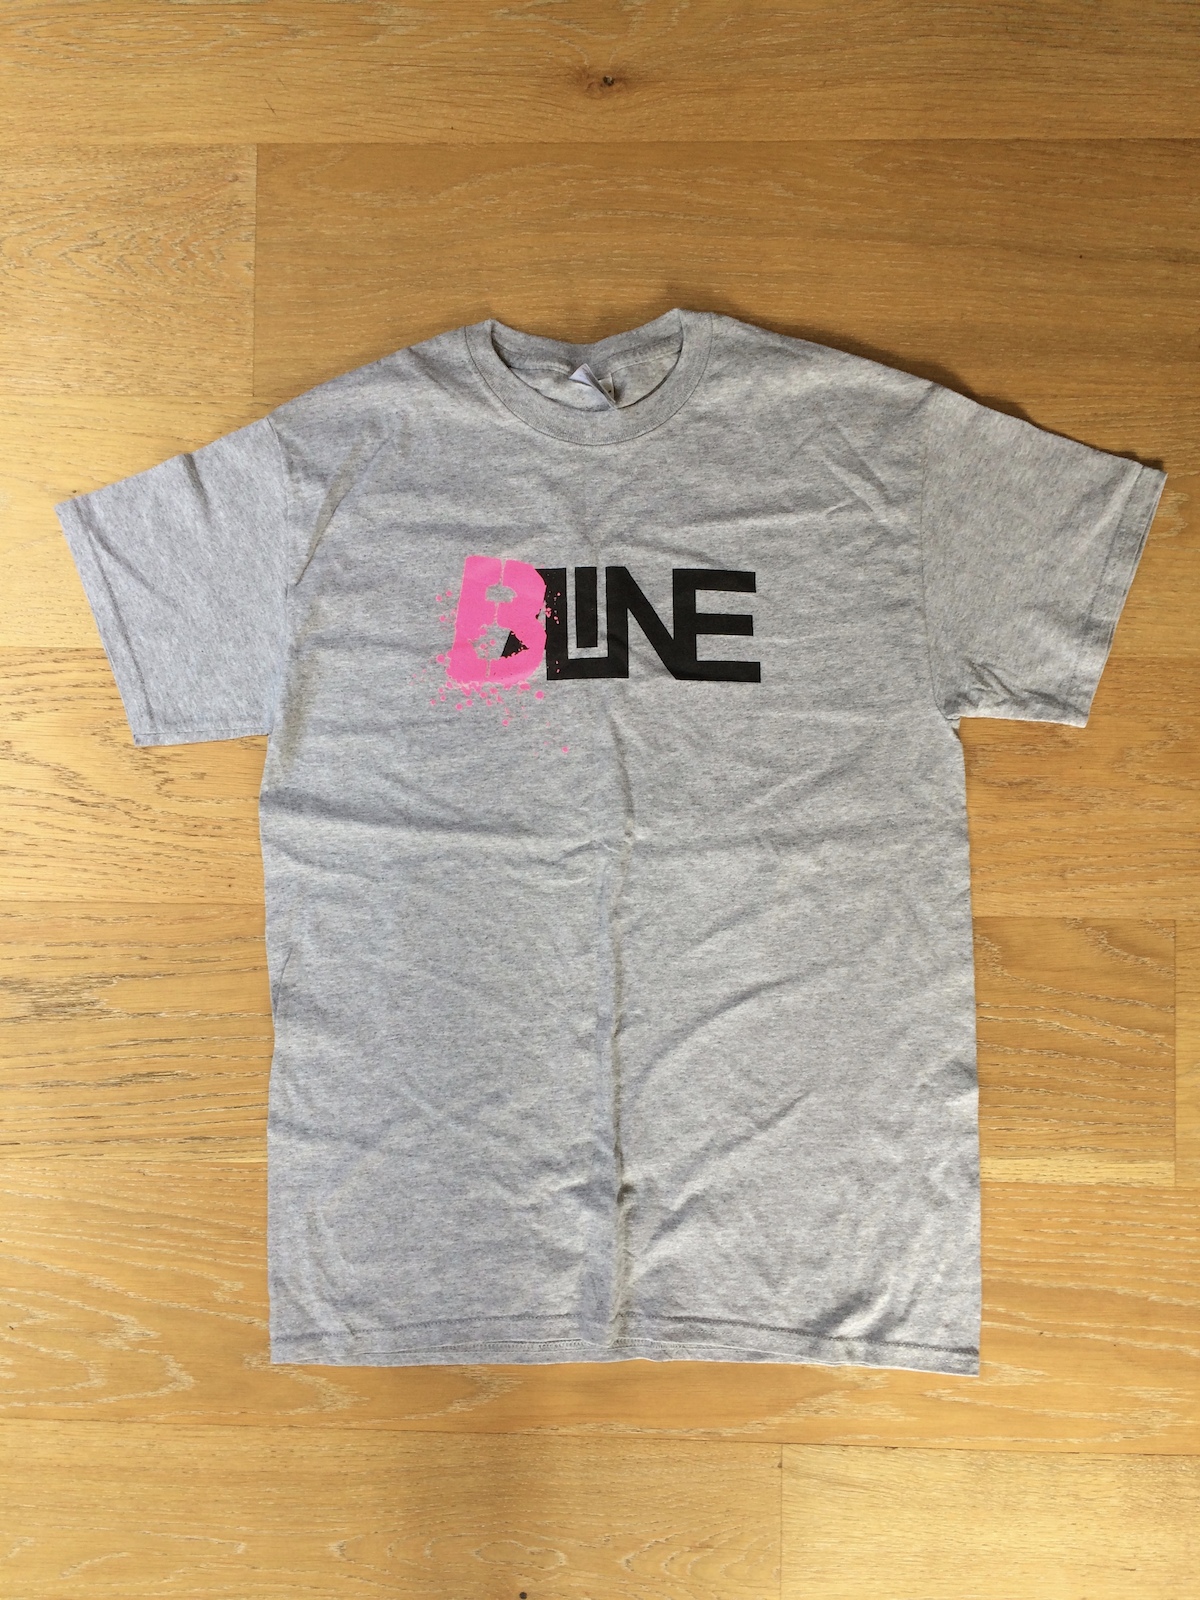 2014 B-Line T-shirt (Medium)